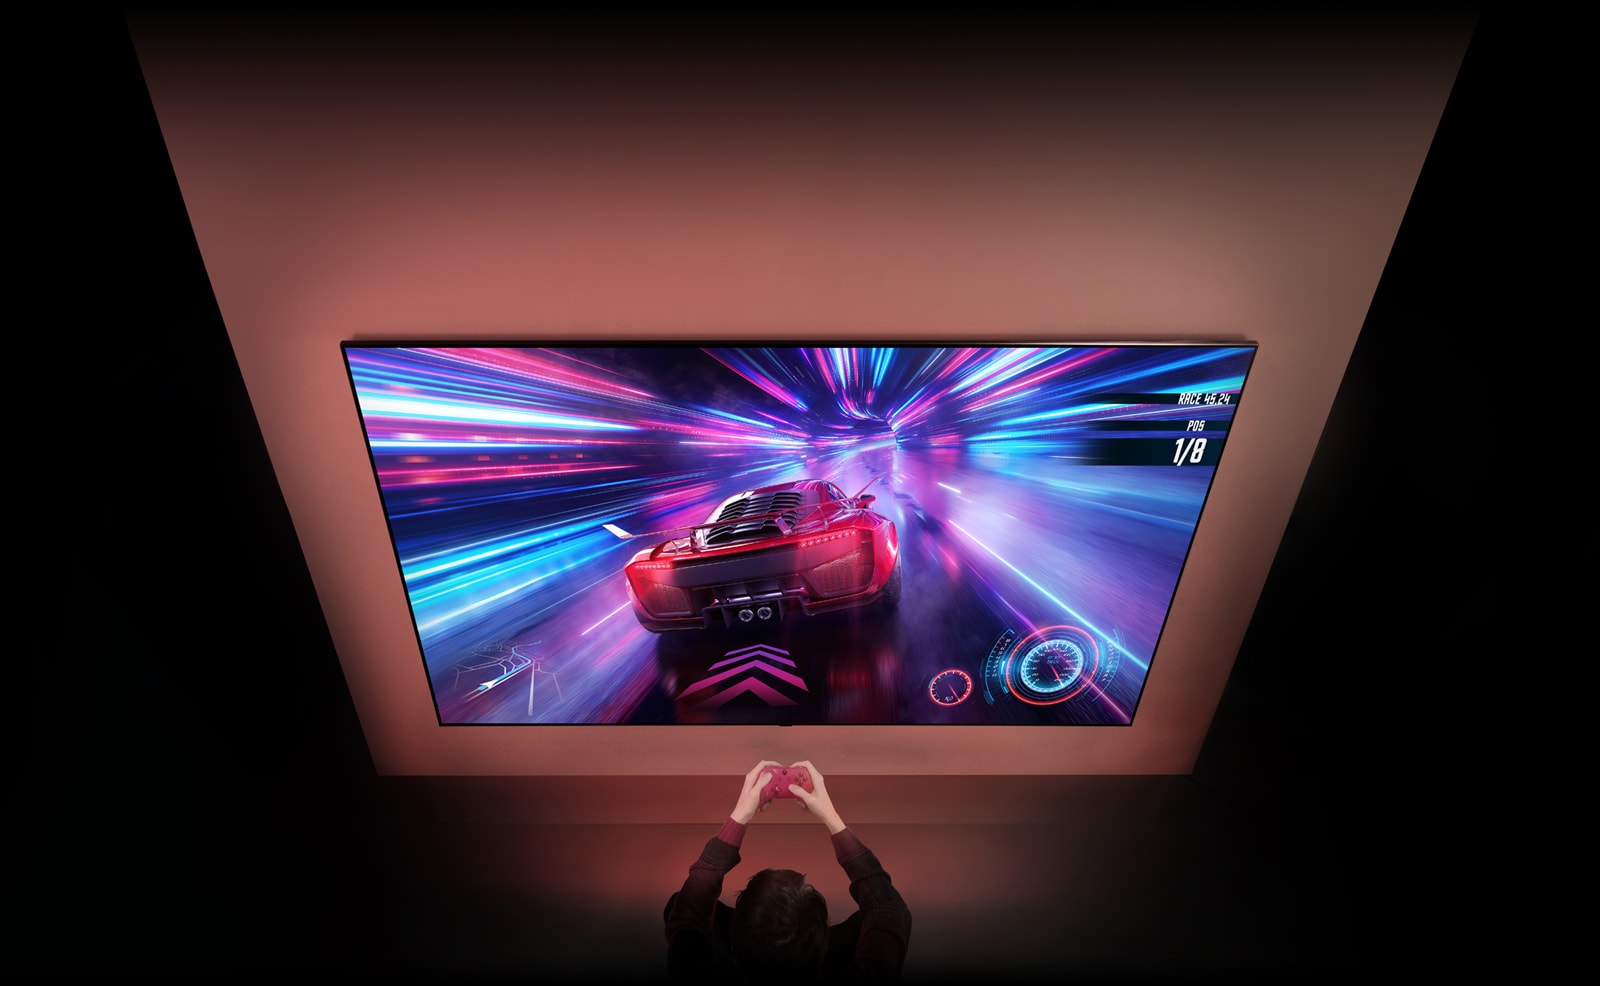 Veliki TV je na zidu i možete vidjeti zaslon trkaće videoigre na zaslonu. Ispred TV-a možete vidjeti ruke i upravljače osobe koja je fokusirana na igru.